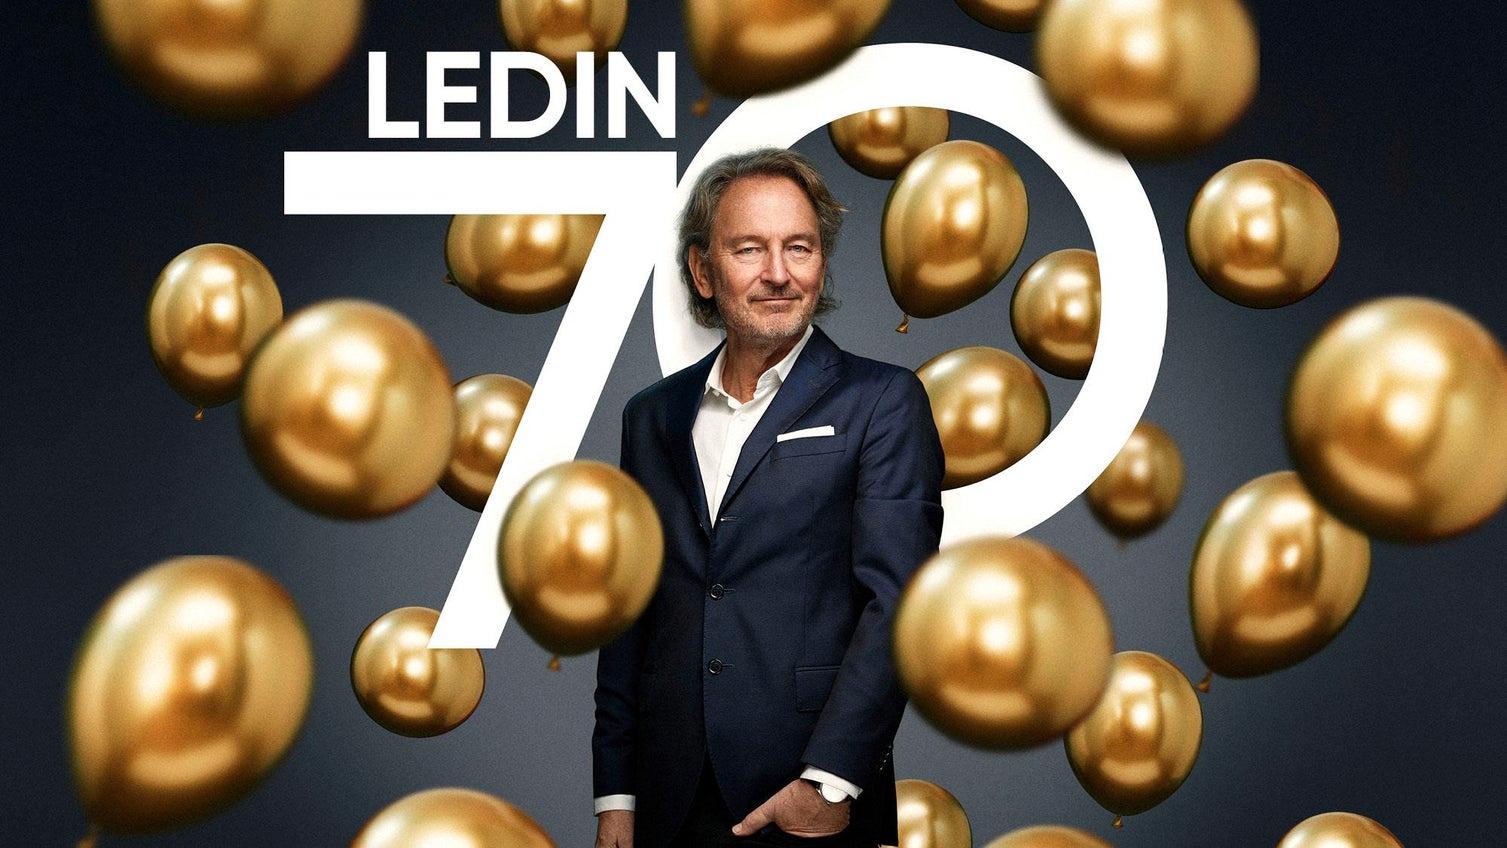 Tomas Ledin firar 70 år med en konsert i Avicii arena, Globen, den 25 februari.